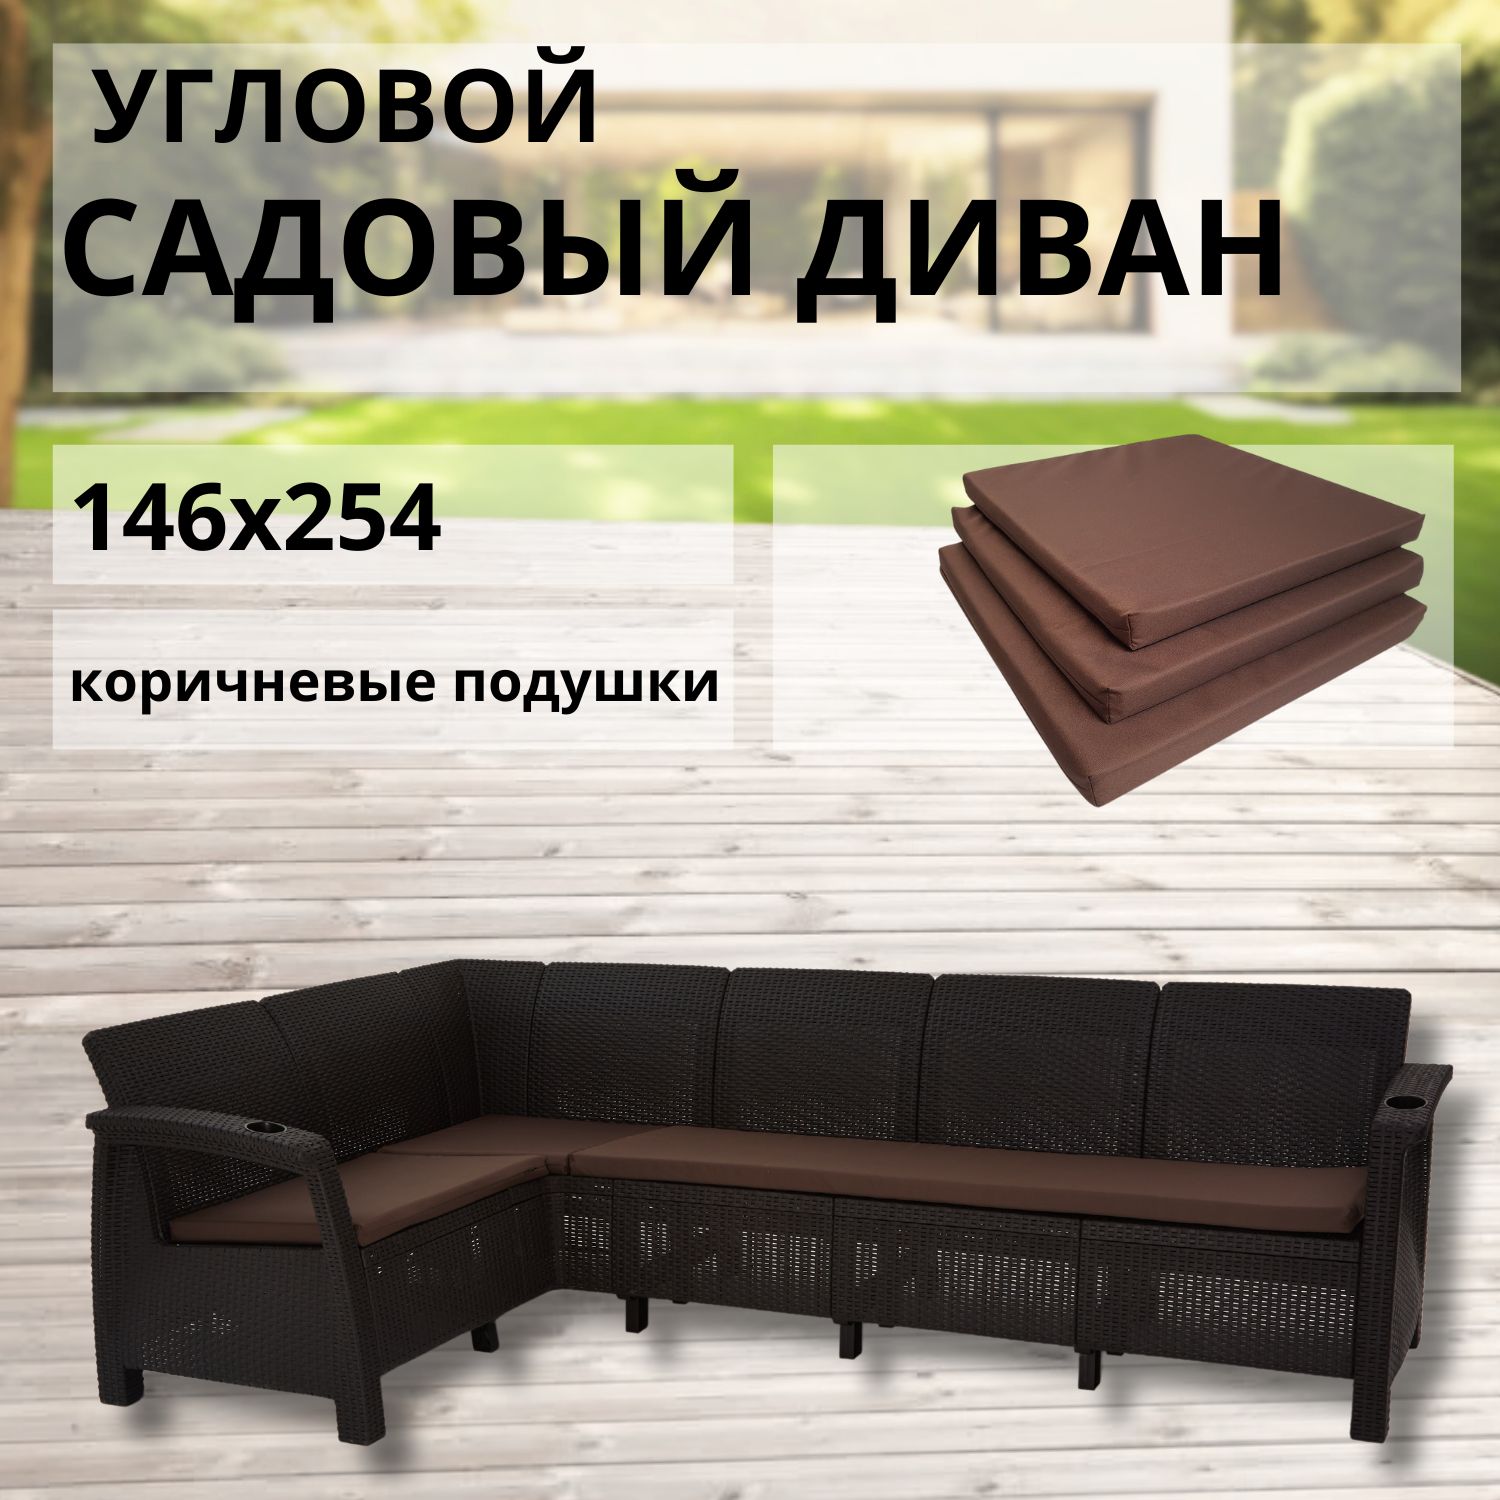 Диван садовый L-угловой с подушками коричневого цвета Альтернатива RT0609 146x254x79